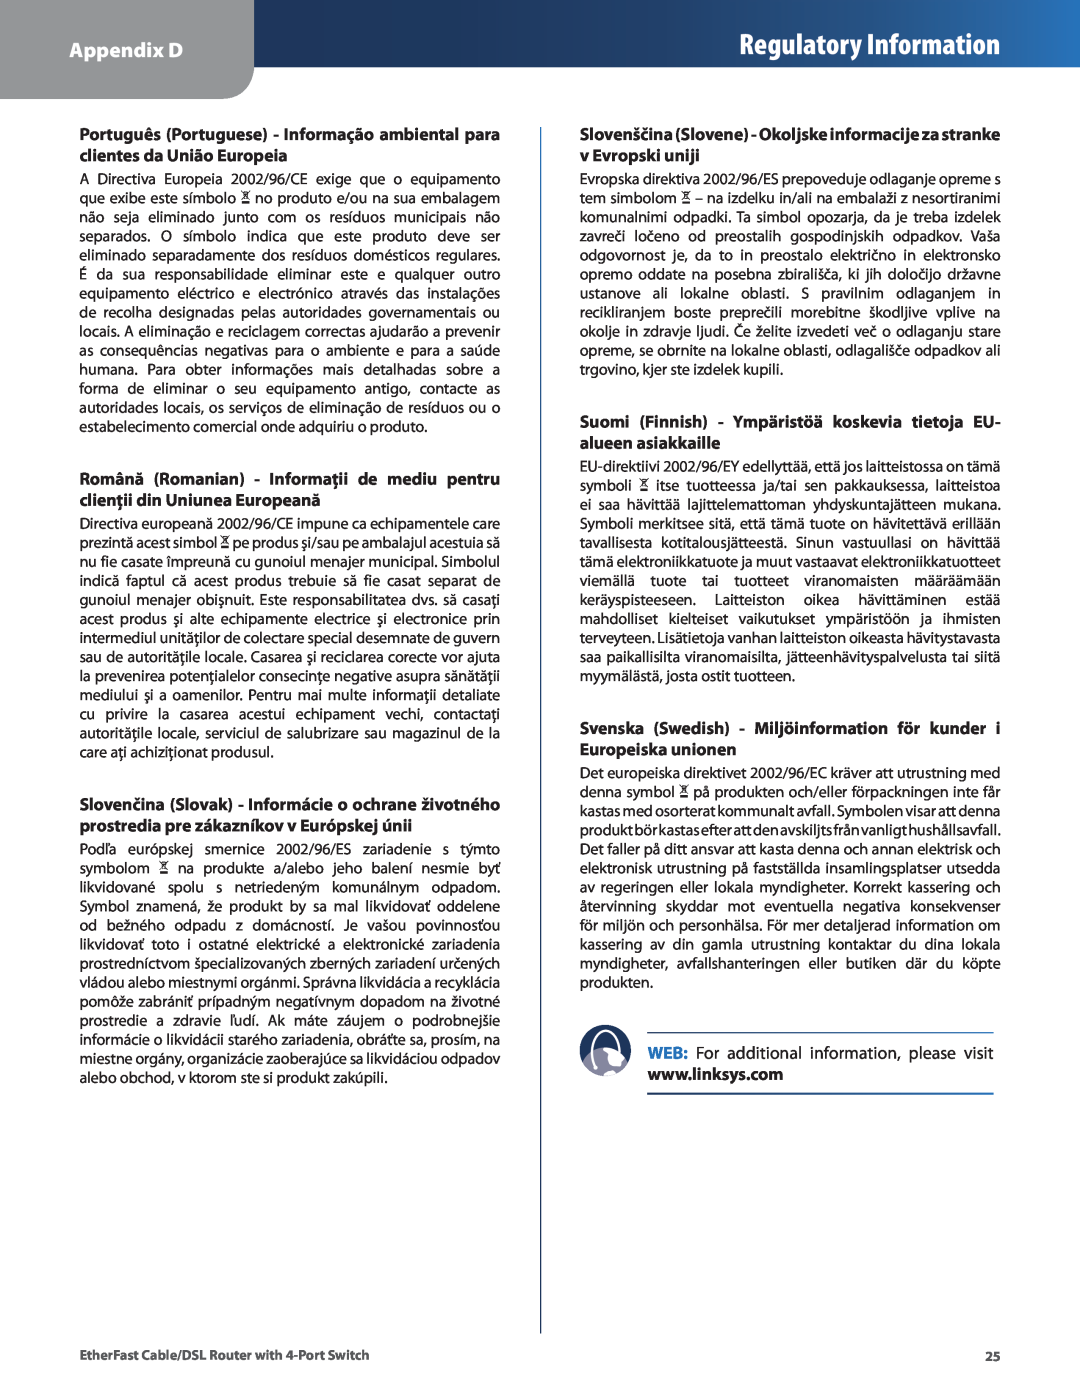 Honeywell HEMS II Regulatory Information, Appendix D, Suomi Finnish - Ympäristöä koskevia tietoja EU- alueen asiakkaille 